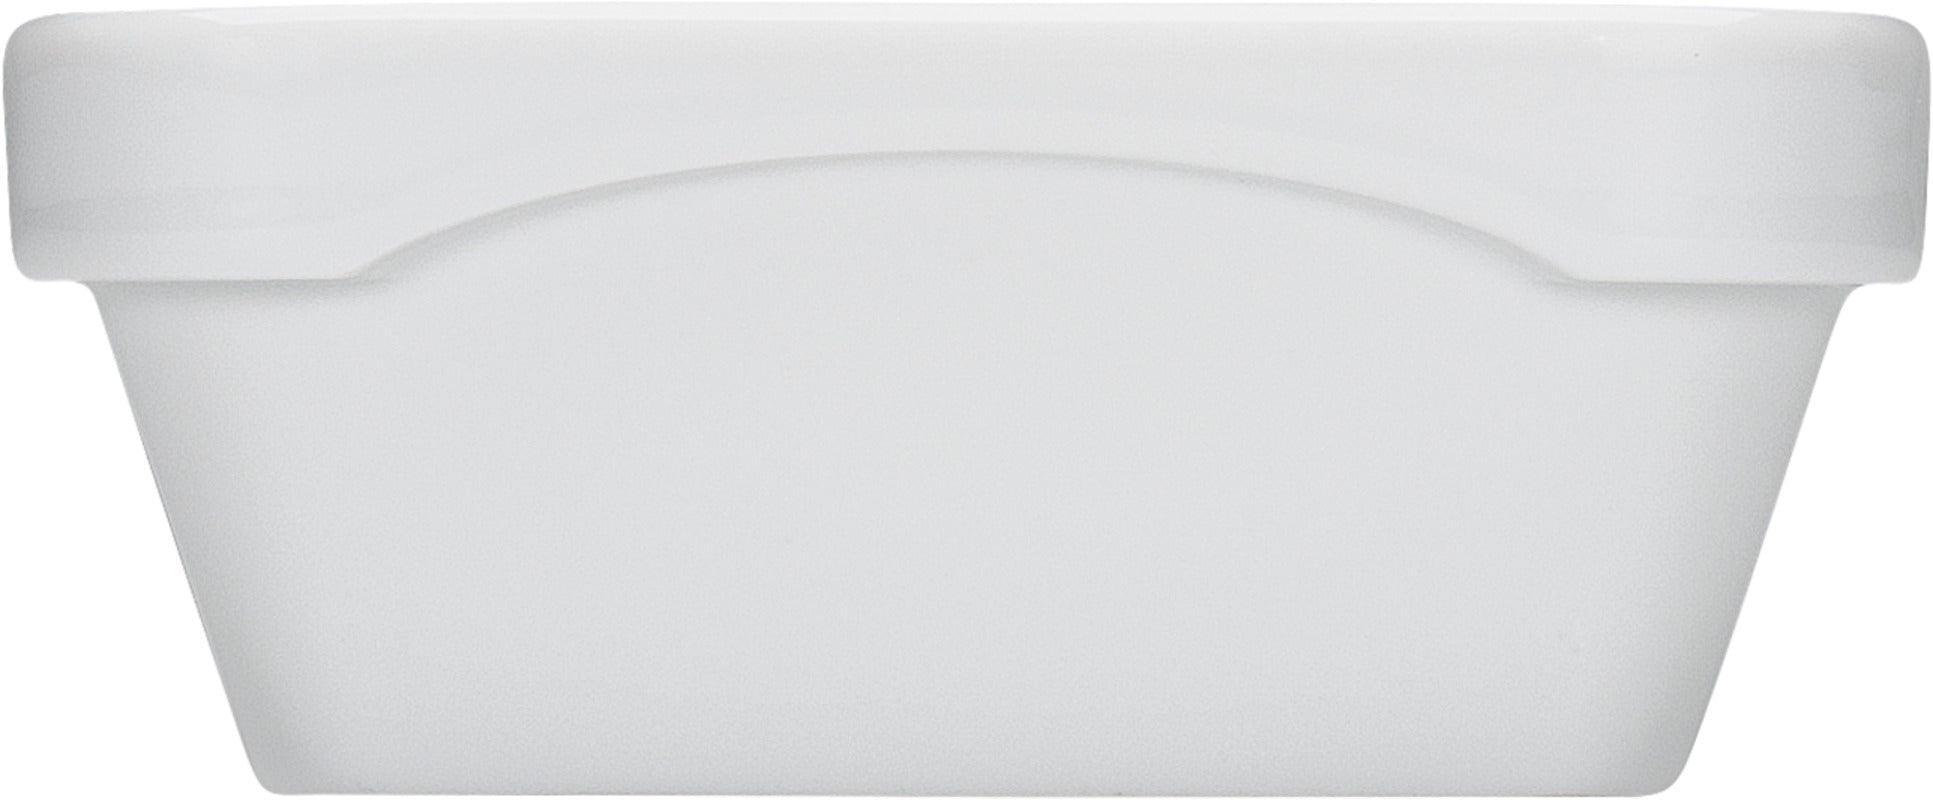 White Rectangular Dish Airflow & PN 1/4 4.3